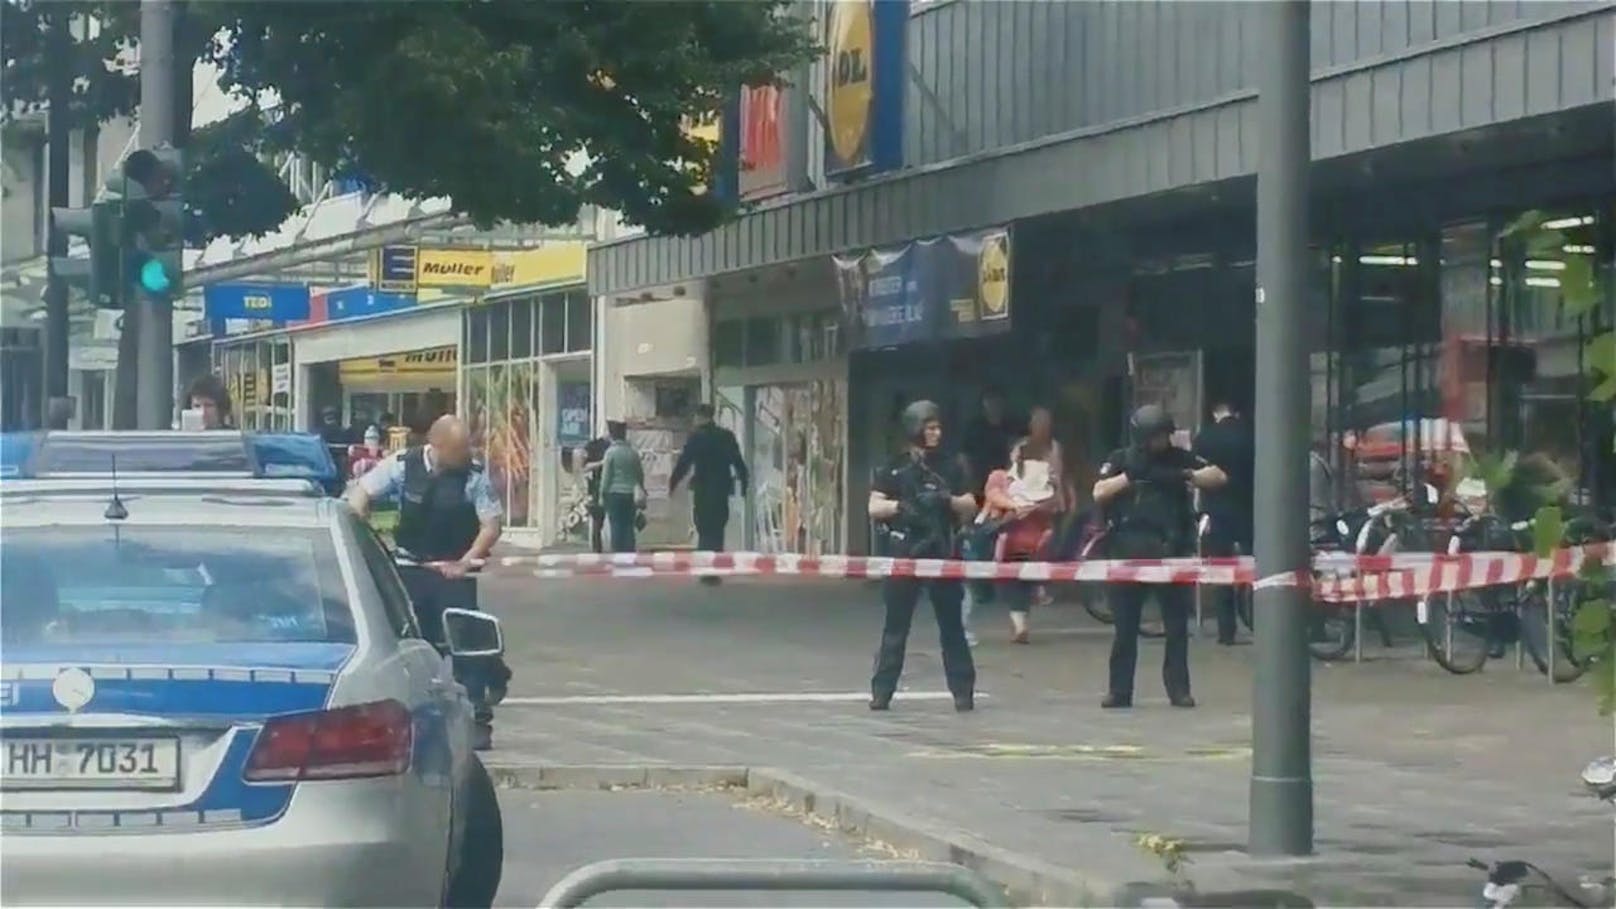 Der Täter betrat am Freitagnachmittag den Supermarkt im Stadtteil Barmbek und stach dort "unvermittelt auf Kunden ein", wie Polizeisprecherin Heike Uhde der Hamburger Polizei erklärte.